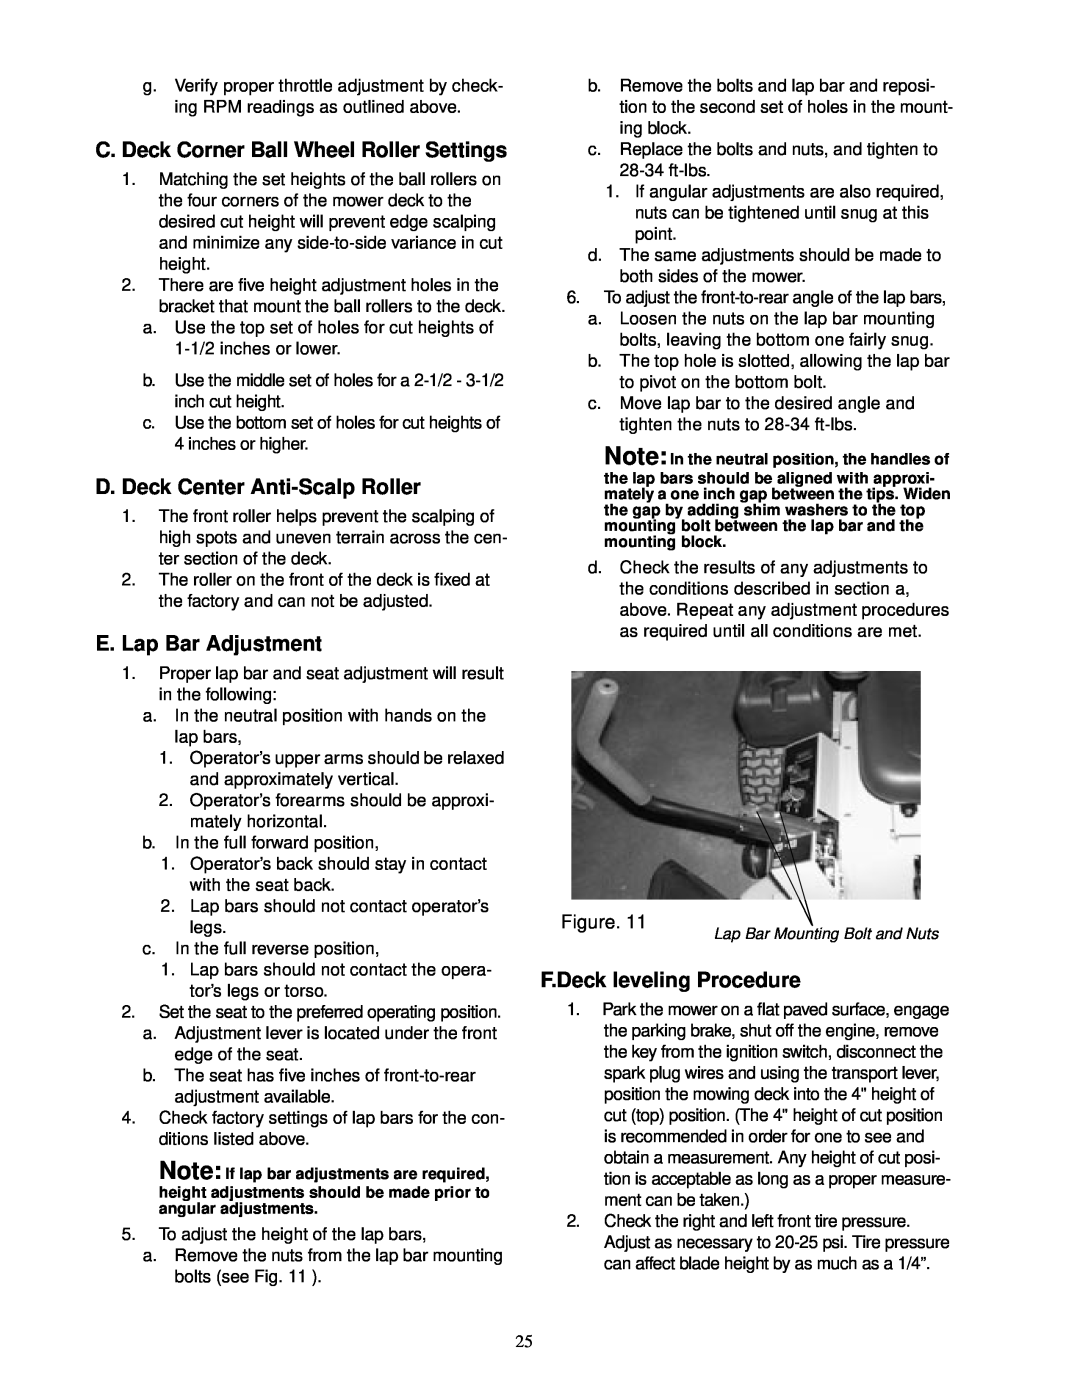 Cub Cadet 23HP Z-Force 50 service manual C. Deck Corner Ball Wheel Roller Settings, D. Deck Center Anti-Scalp Roller 